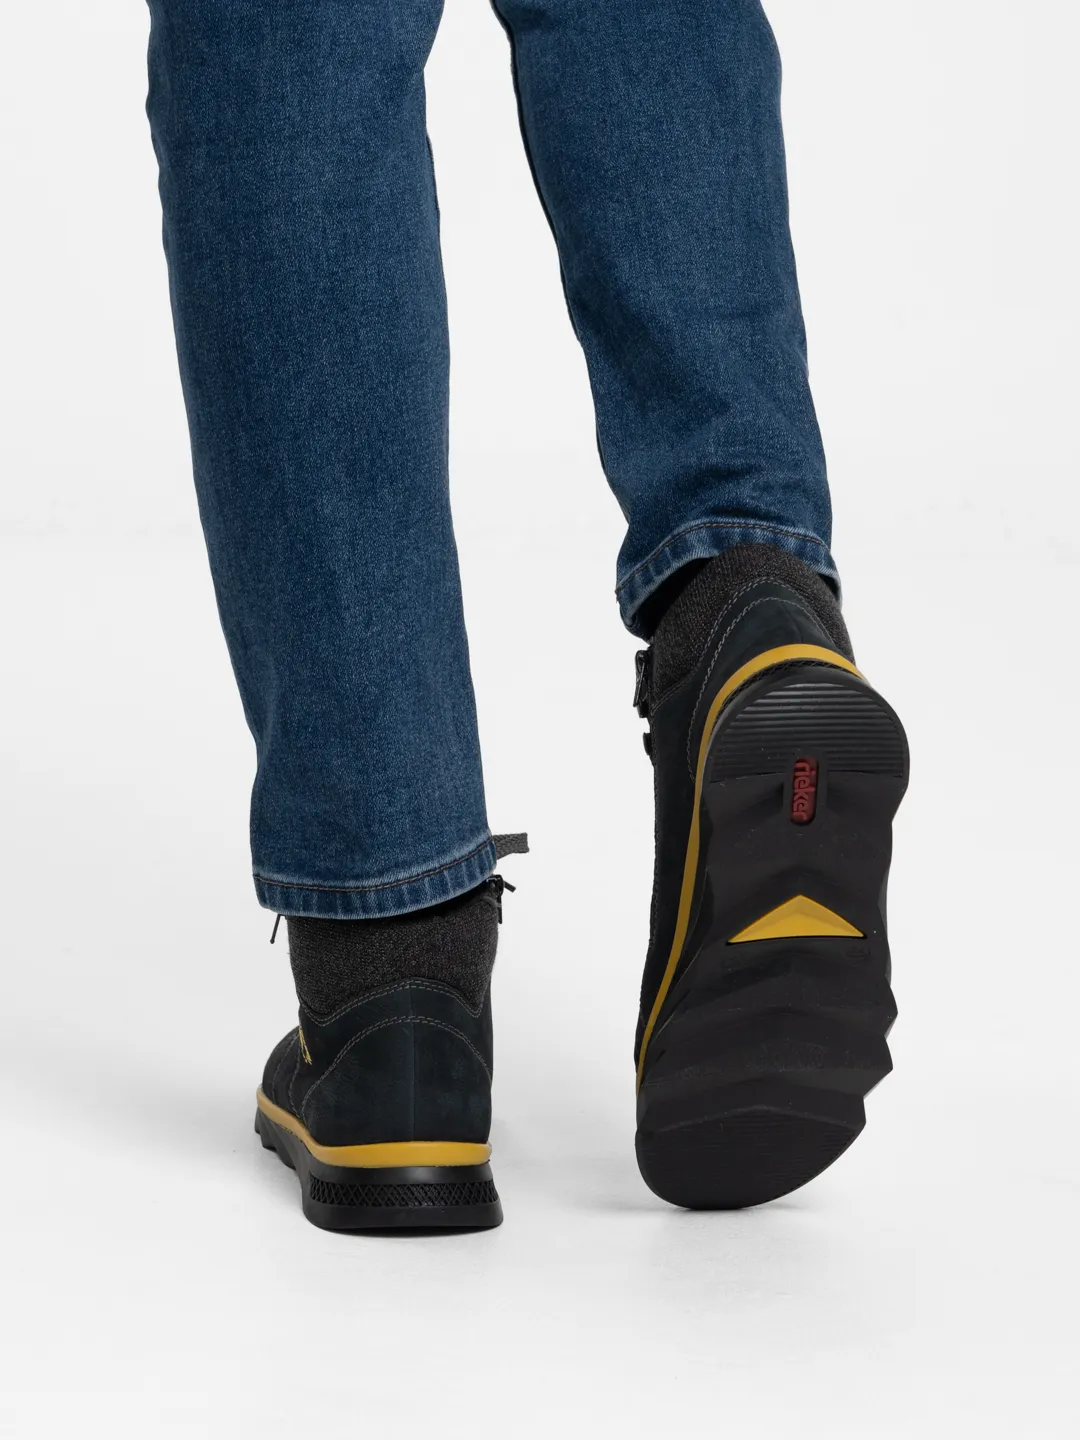 Ботинки Rieker, мужские зимние, из натуральной кожи купить по цене 7650 ₽ винтернет-магазине KazanExpress